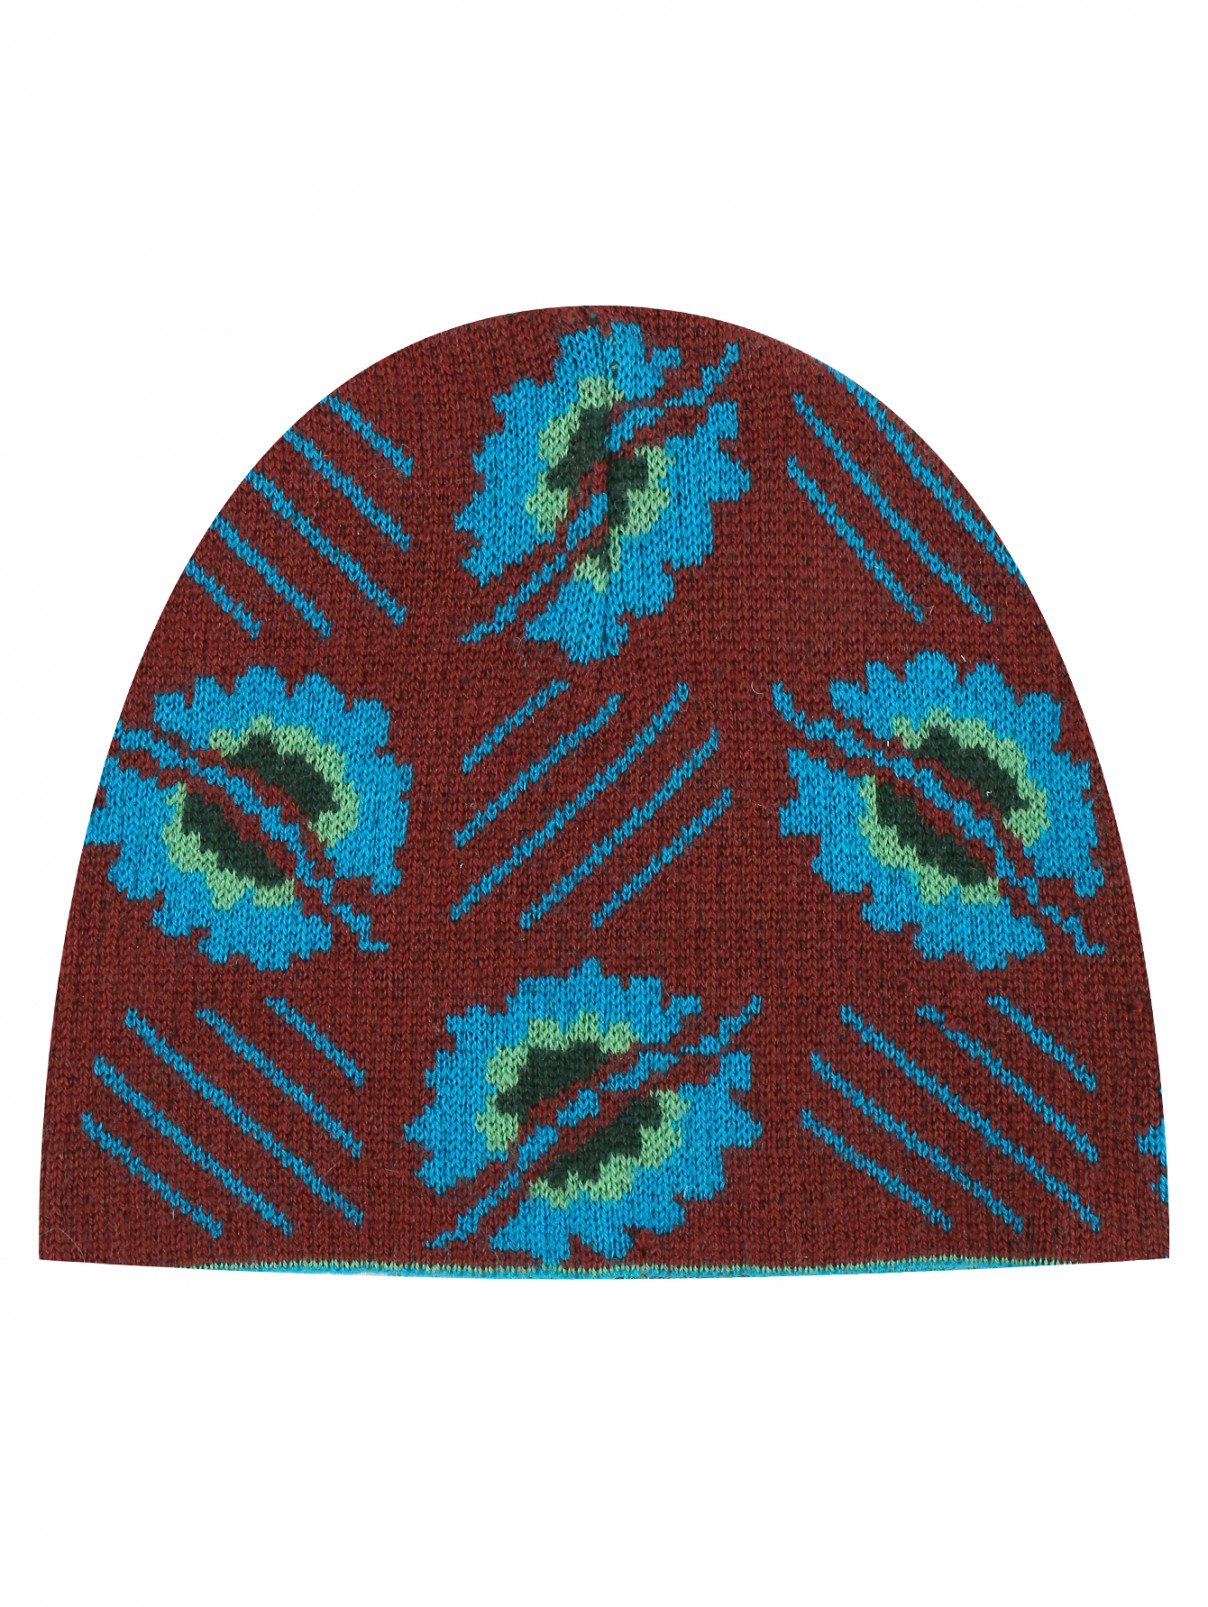 Трикотажная шапка с узором Quincy  –  Общий вид  – Цвет:  Мультиколор